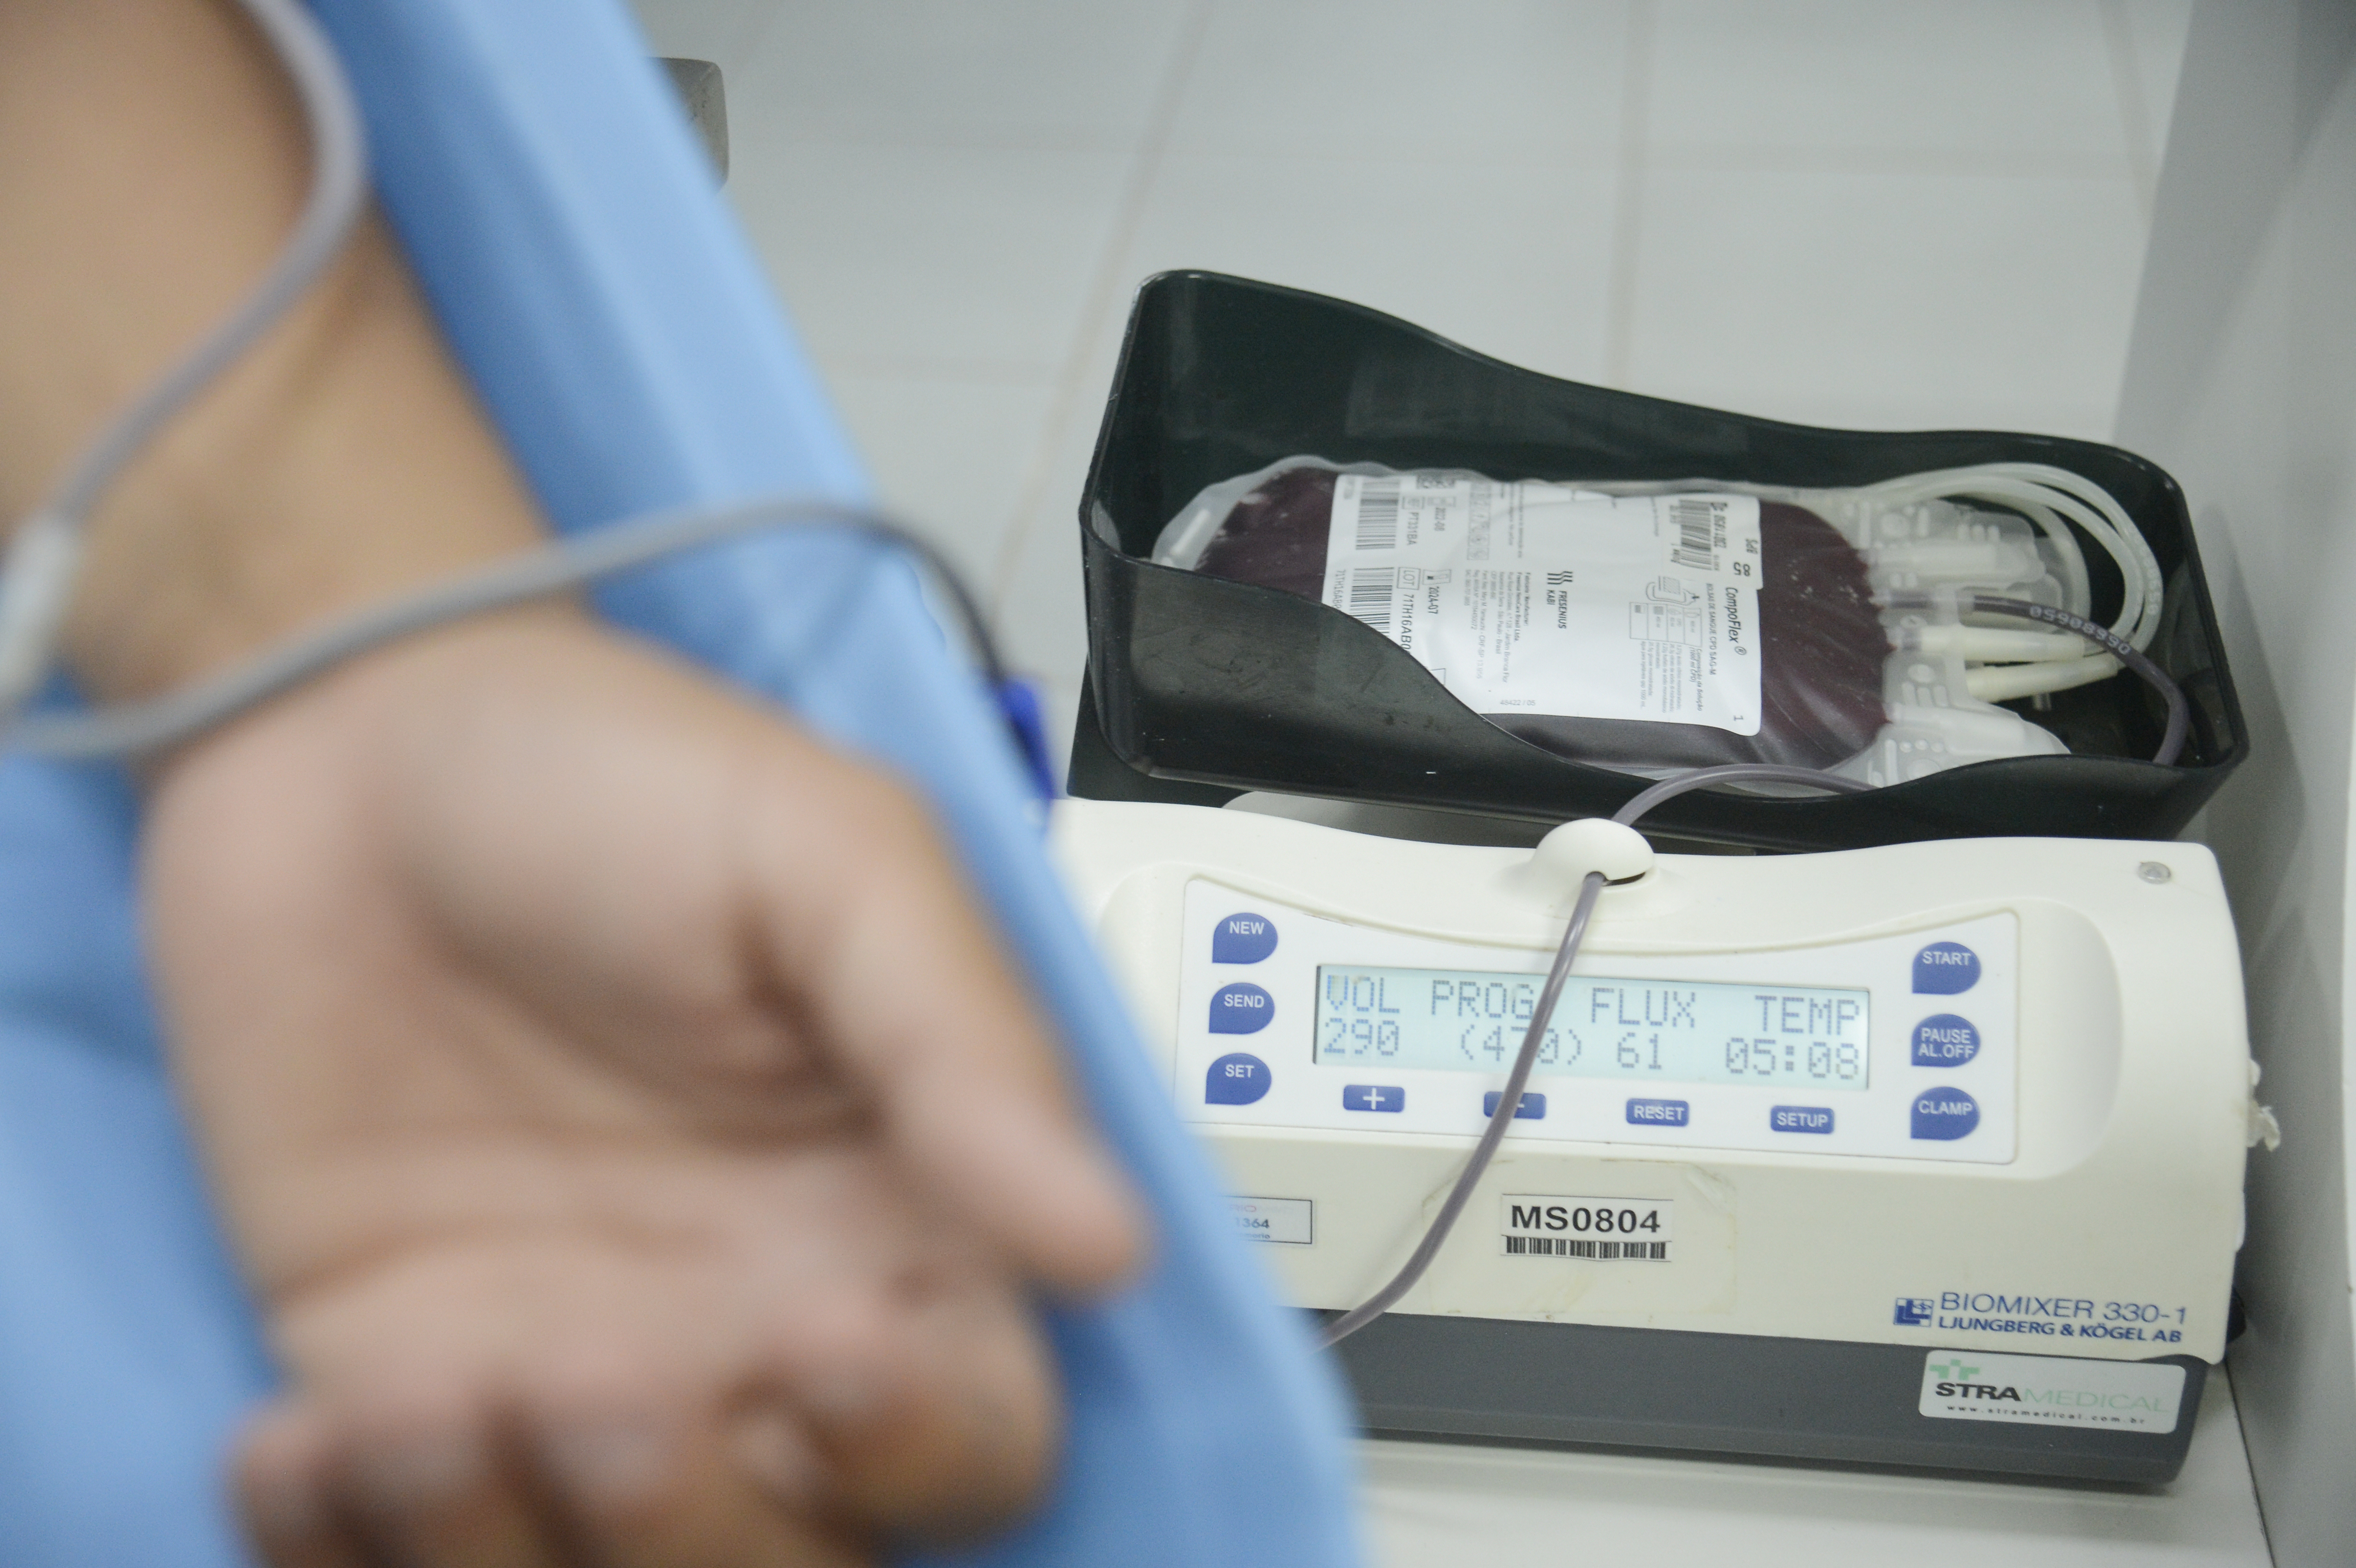 No Brasil, mais de 3 milhões de doações de sangue são realizadas anualmente no SUS